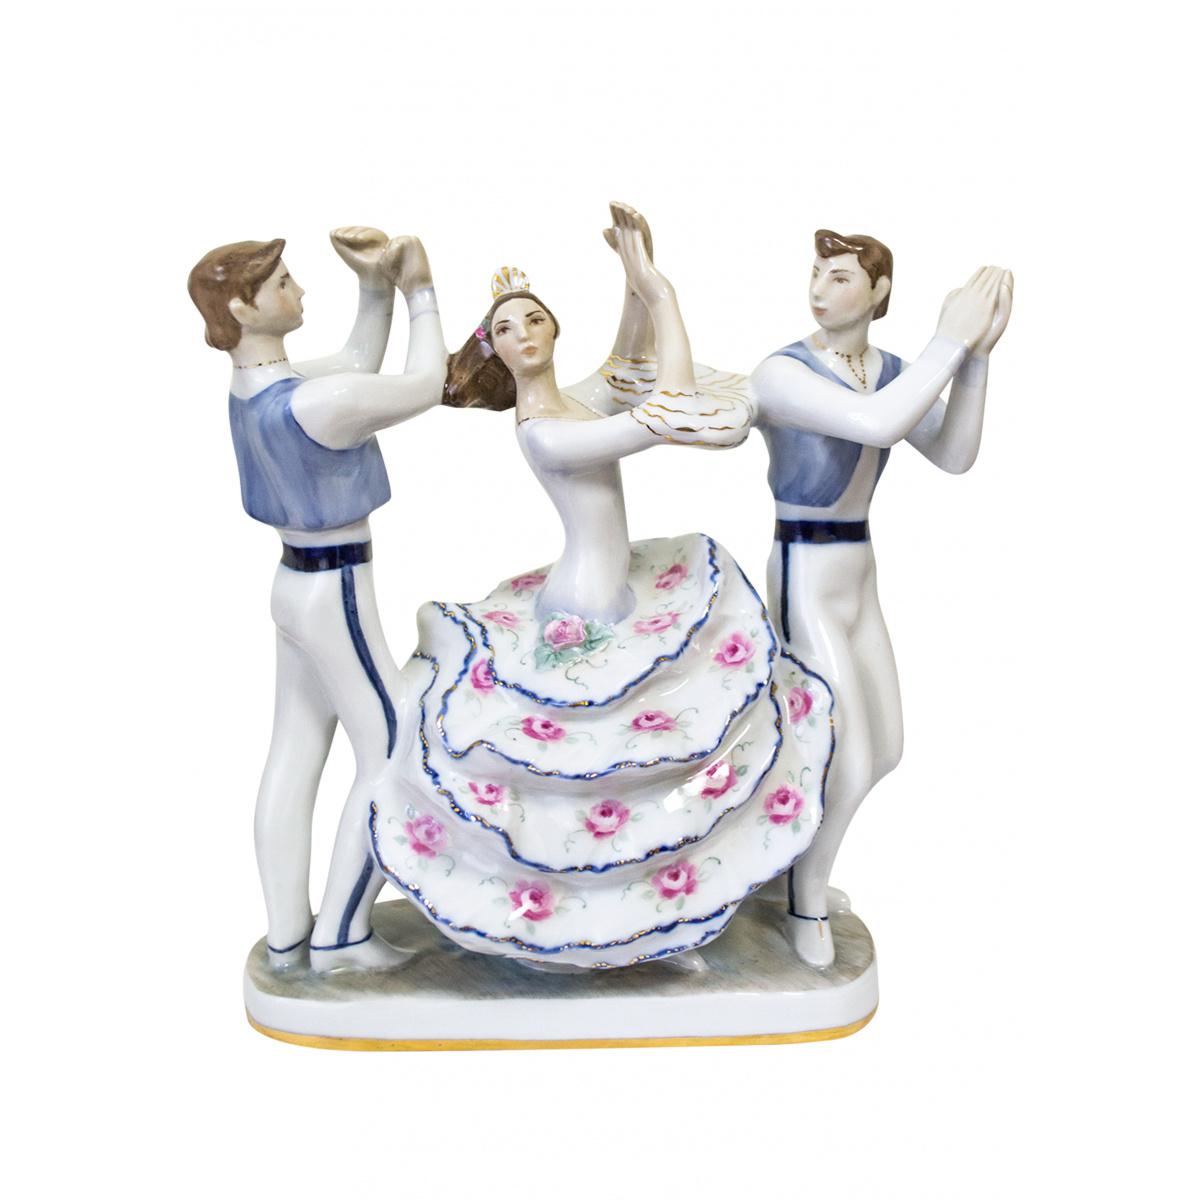 Скульптура "Испанский танец" автор Гатилова Е.И.